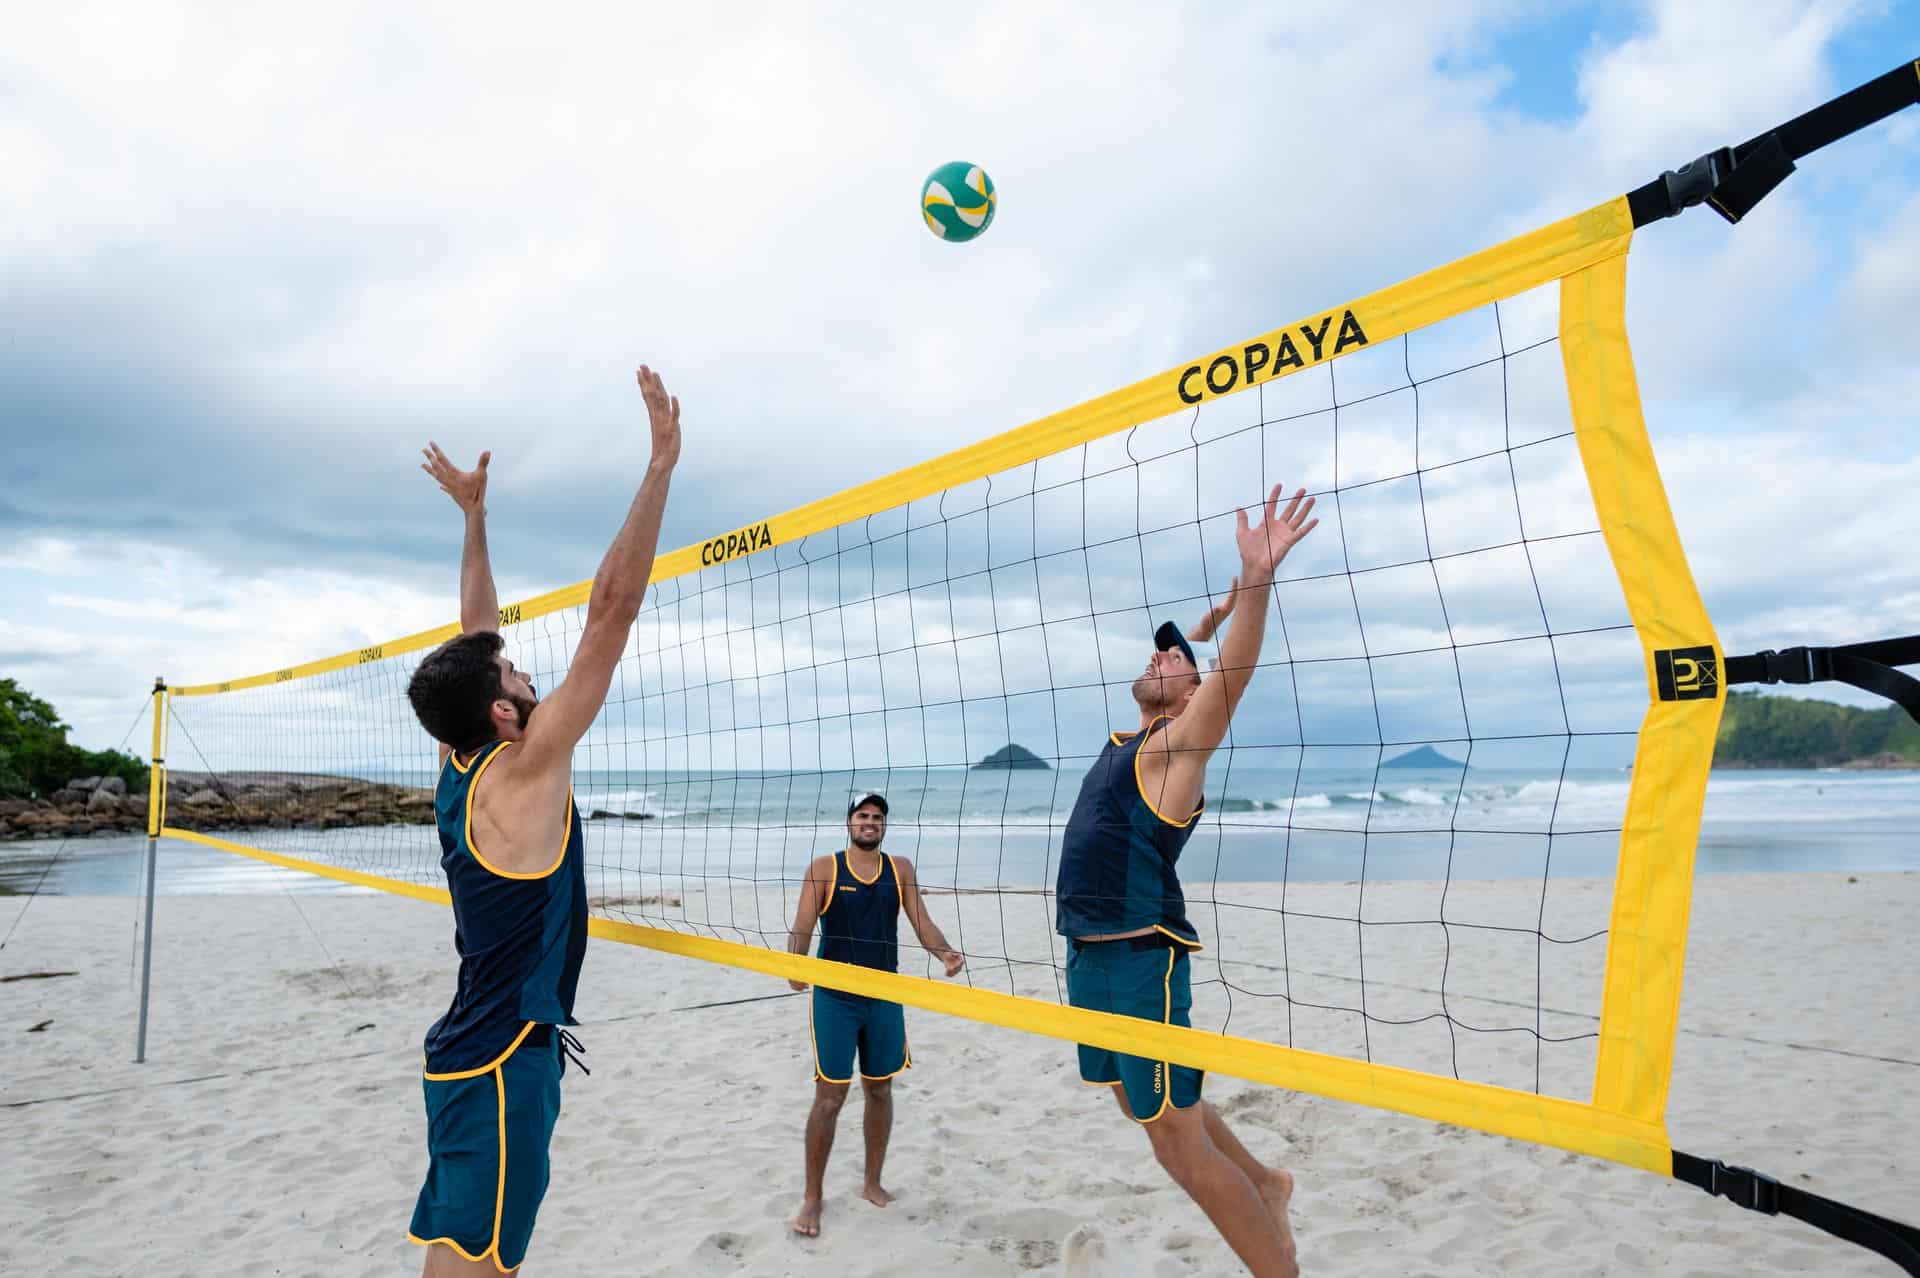 Siatkówka plażowa - regulamin i zasady gry